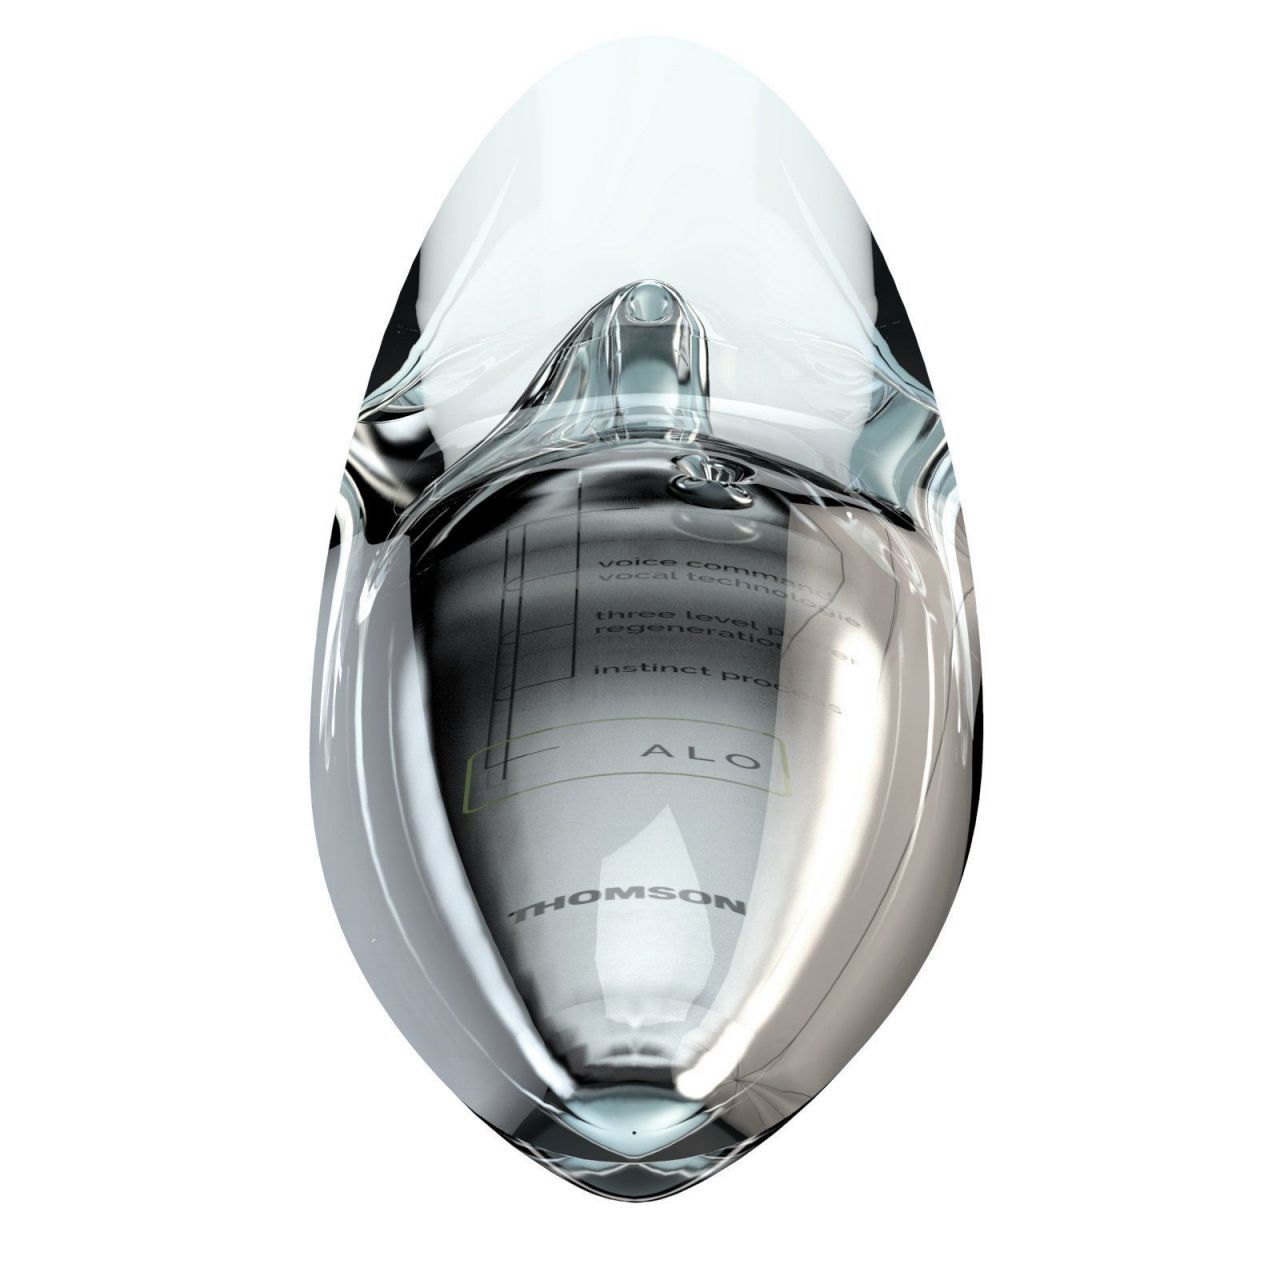 Alo : Philippe Starck imagine un smartphone mou à projecteur holographique #3